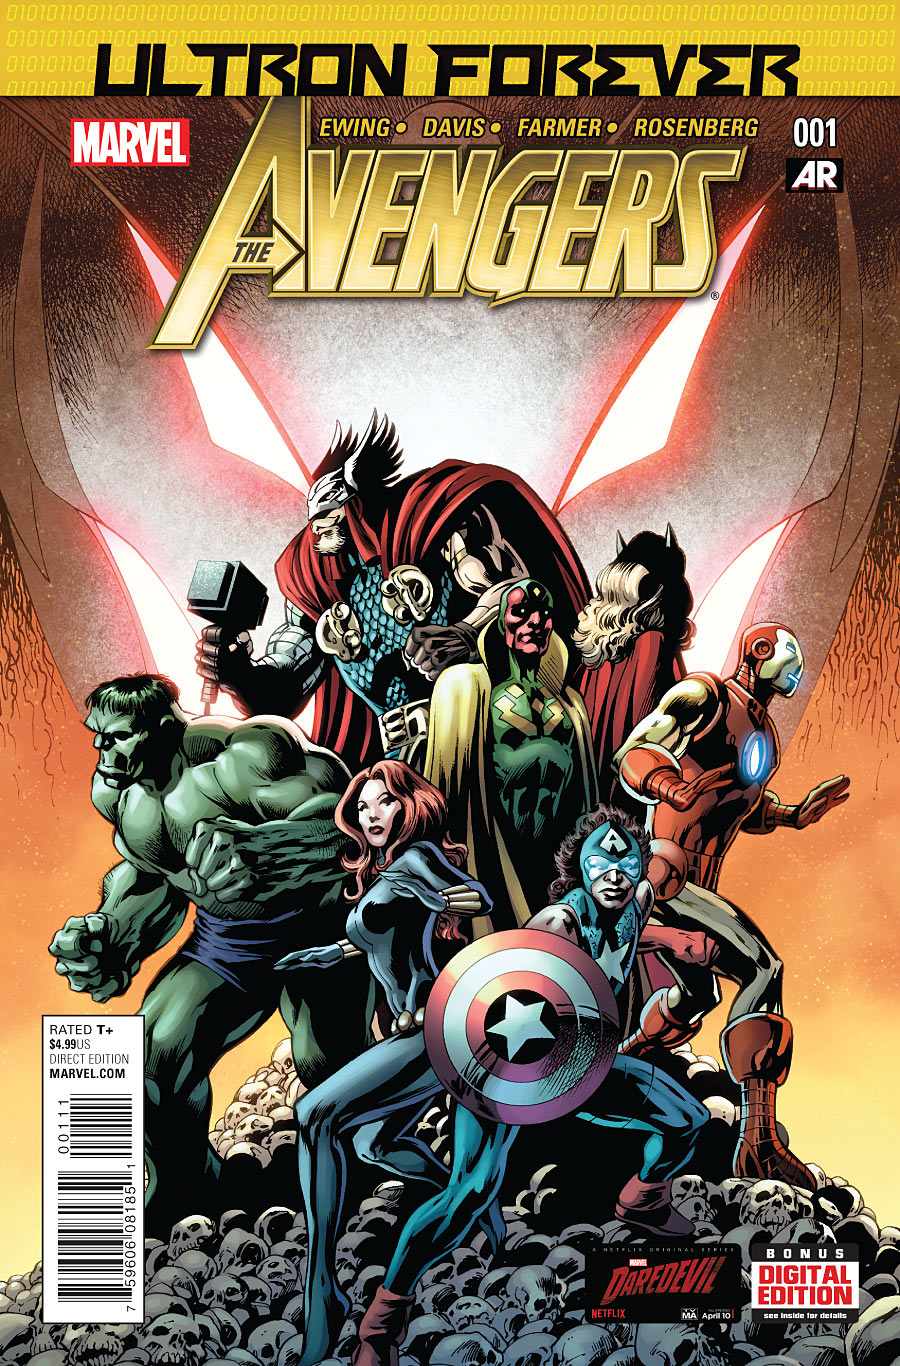 Avengers: Ultron Forever Vol. 1 #1